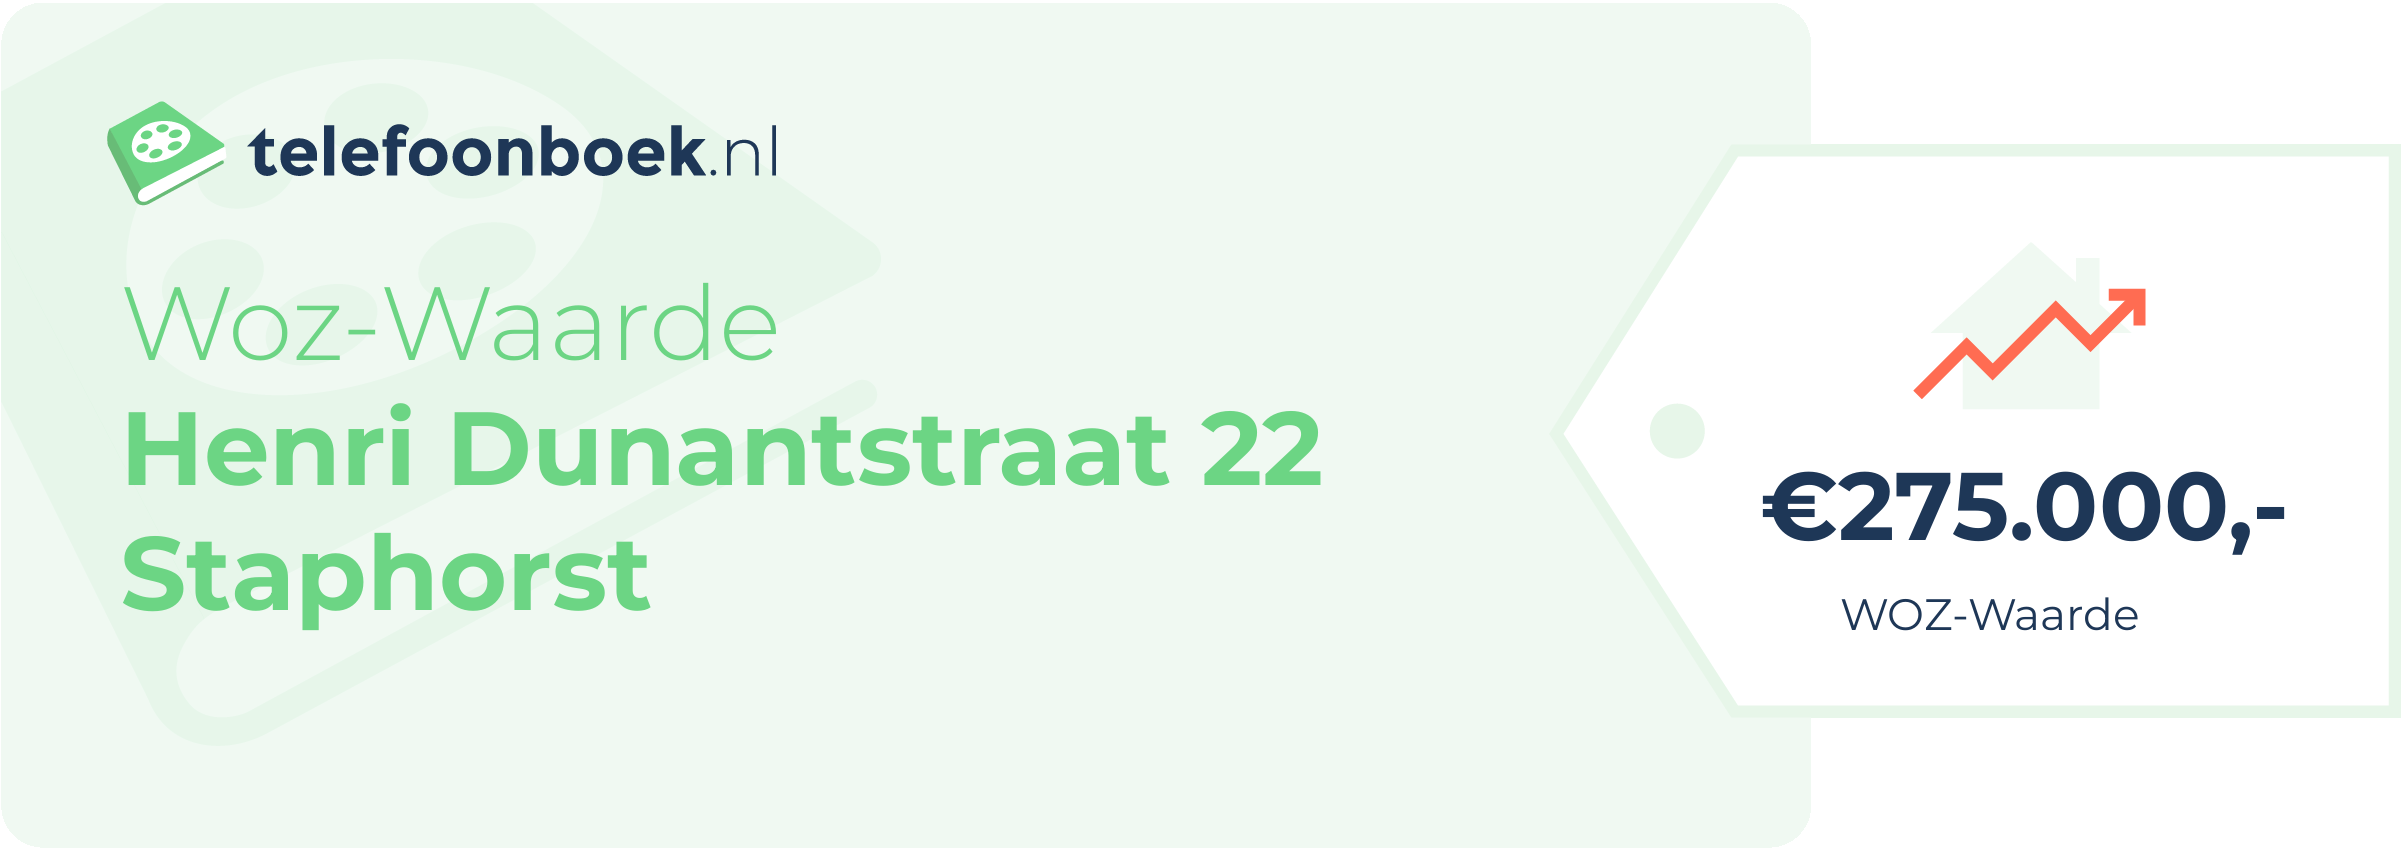 WOZ-waarde Henri Dunantstraat 22 Staphorst